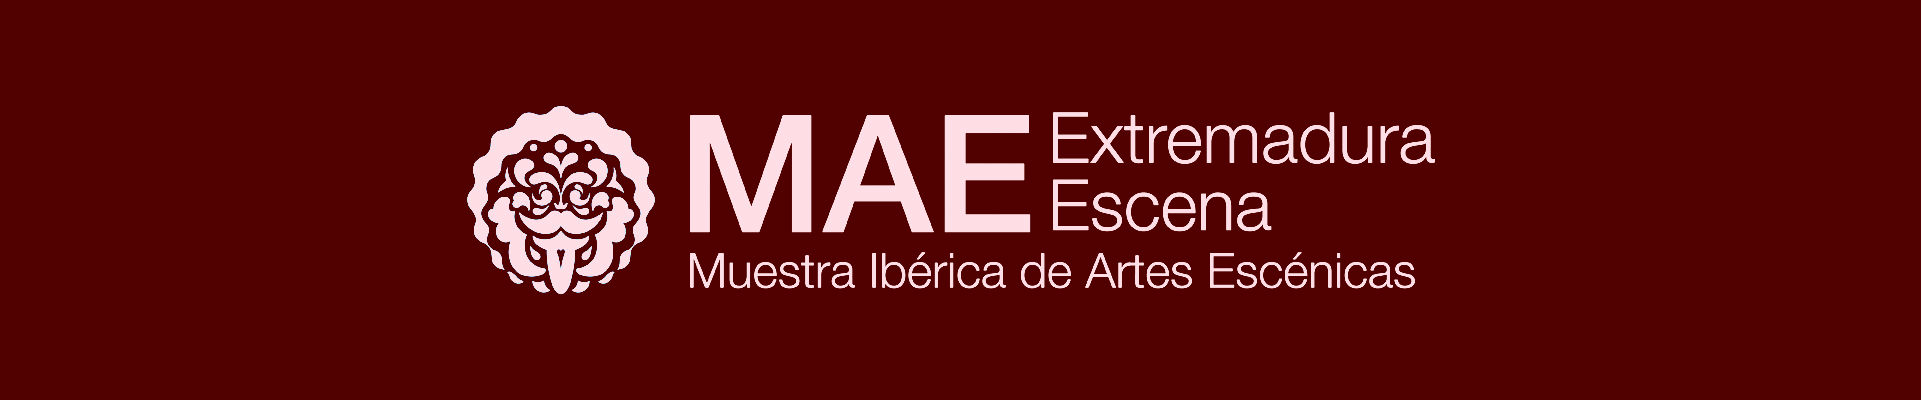 MAE - Muestra Ibérica de Artes Escénicas Extremadura